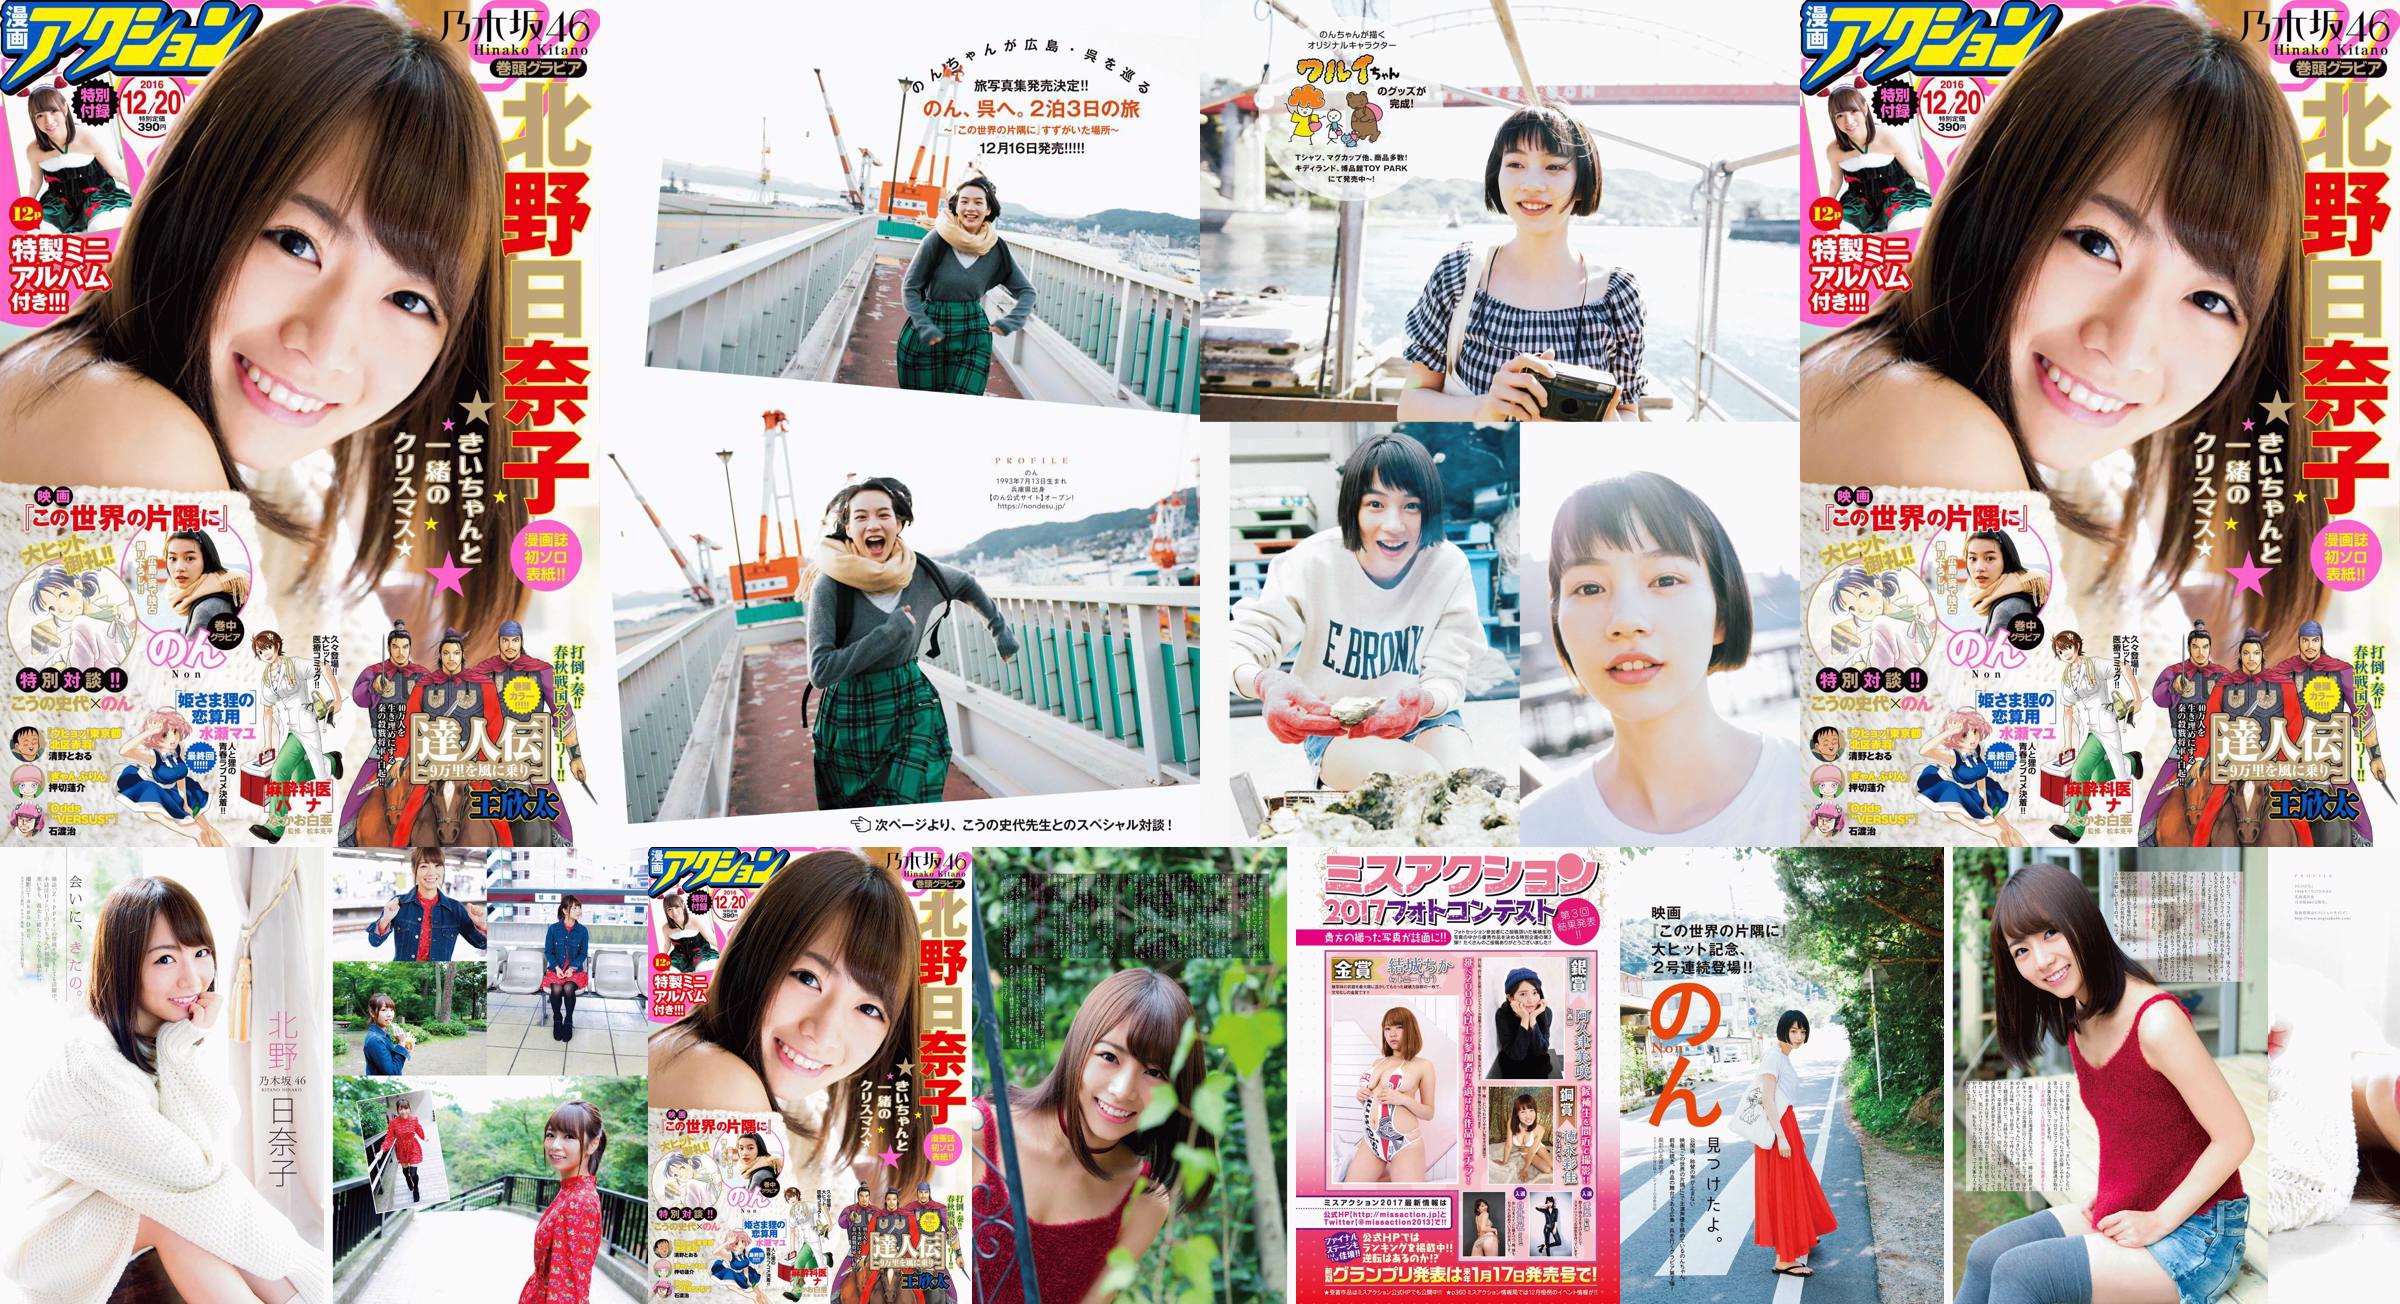 [Manga Action] Kitano Hinako のん 2016 No.24 Photo Magazine No.5c23e5 Página 1